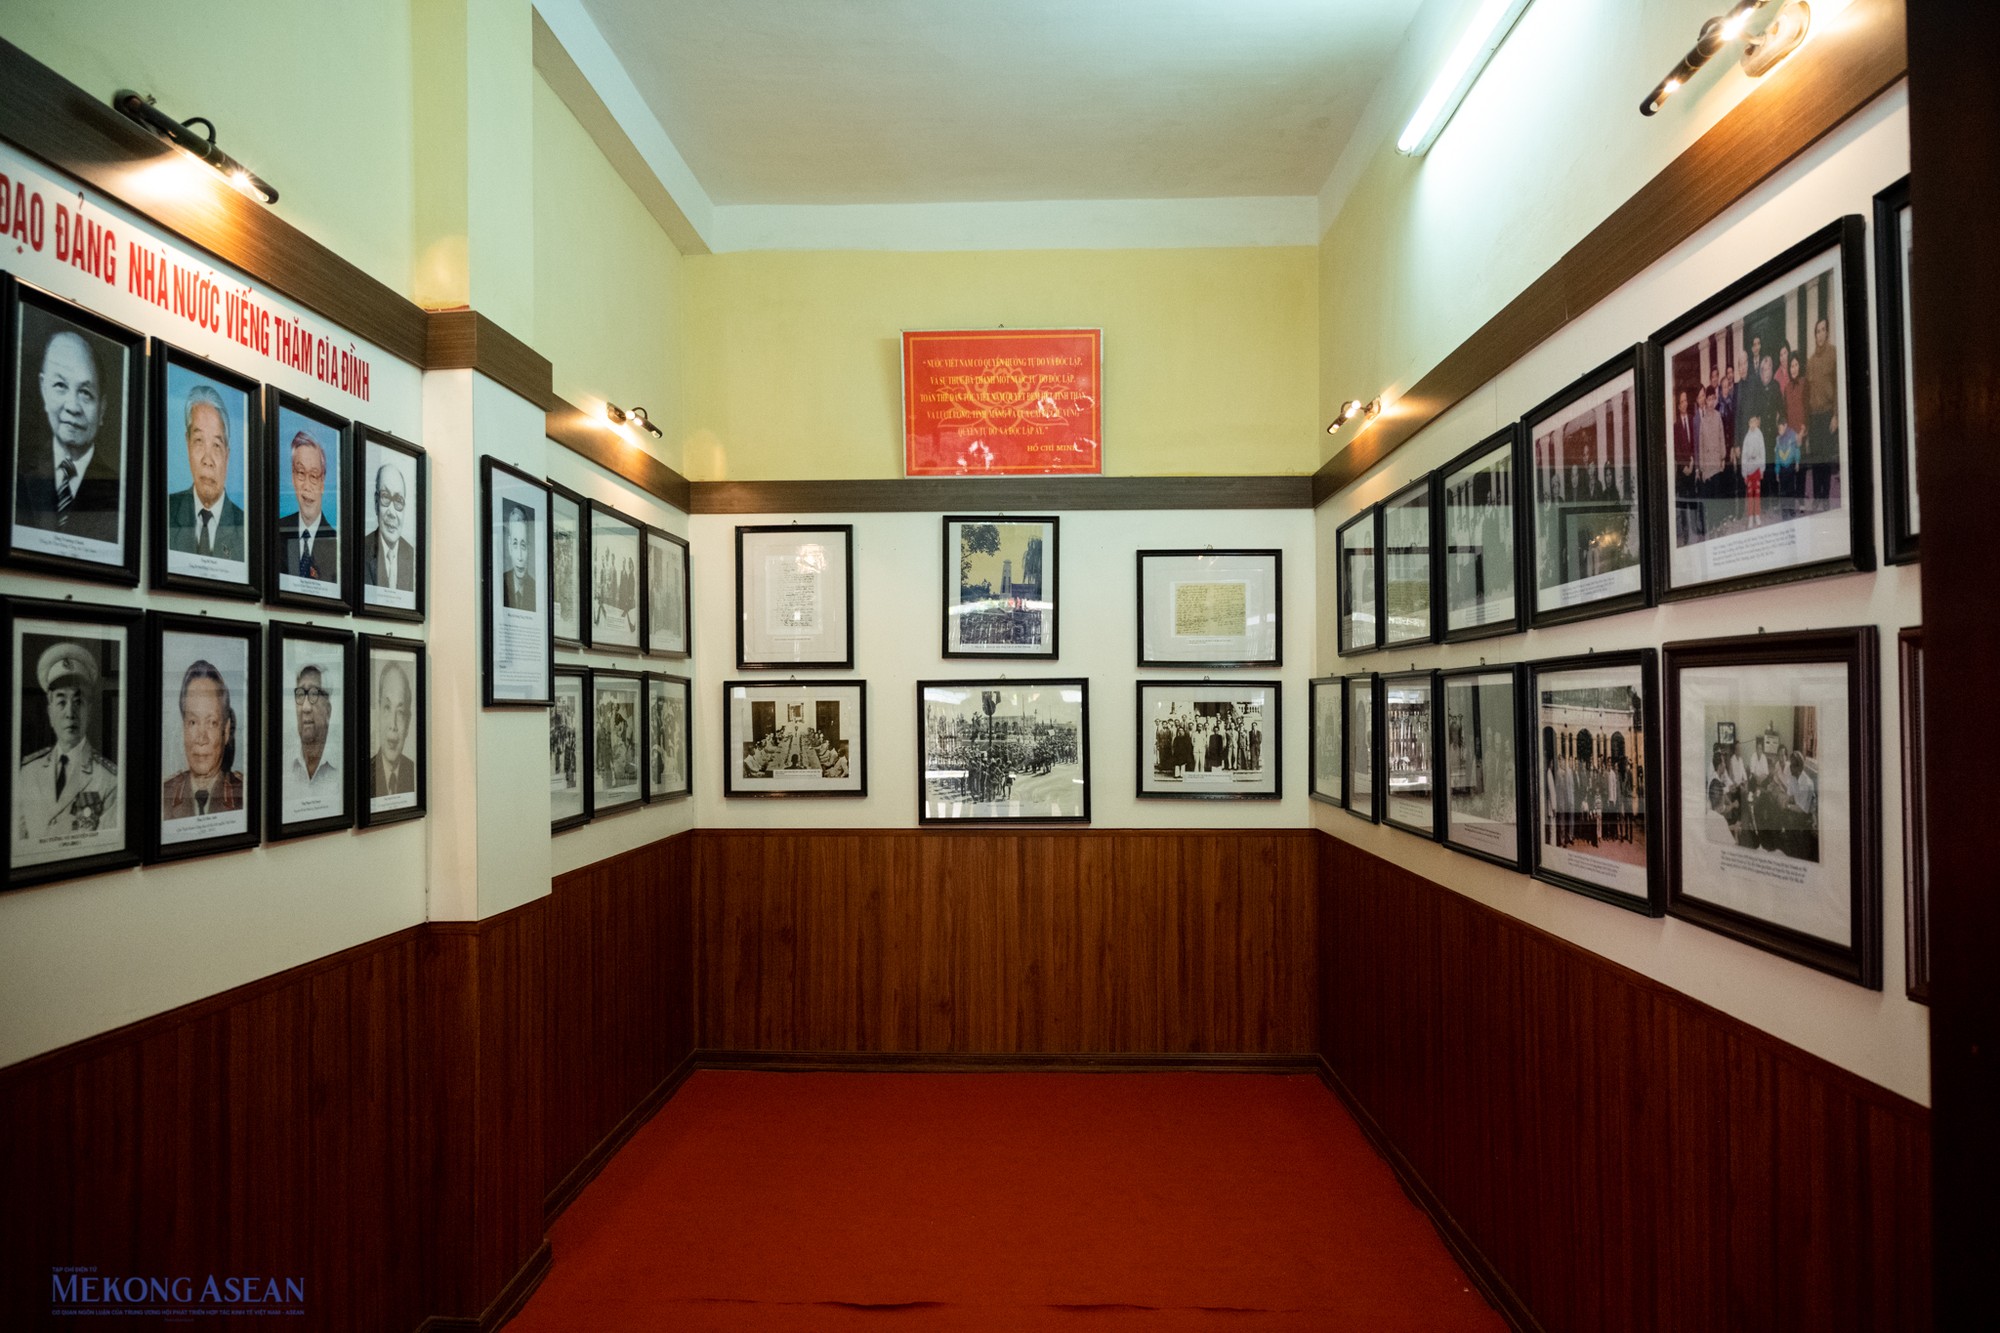 Gian cạnh bên trái ngôi nhà trưng bày các bức ảnh về các thế hệ lãnh đạo Việt Nam và những sự kiện lịch sử đất nước.